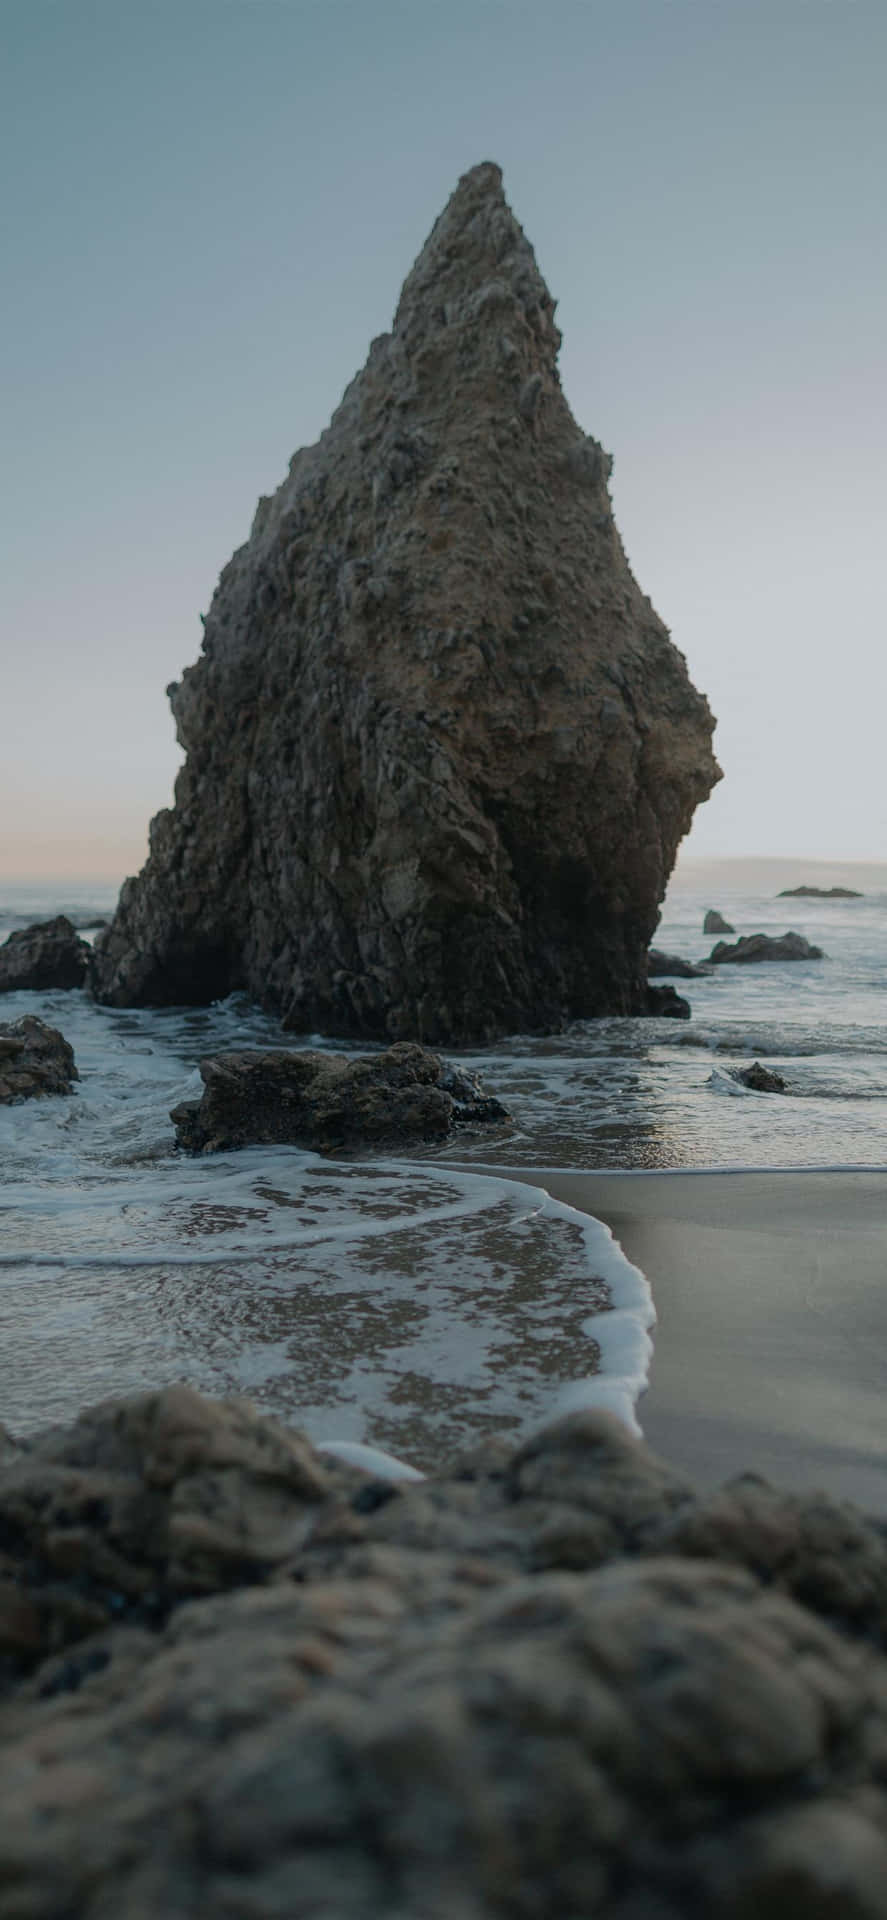 Fondode Pantalla De Malibu En Android Con La Formación Rocosa De El Matador Beach